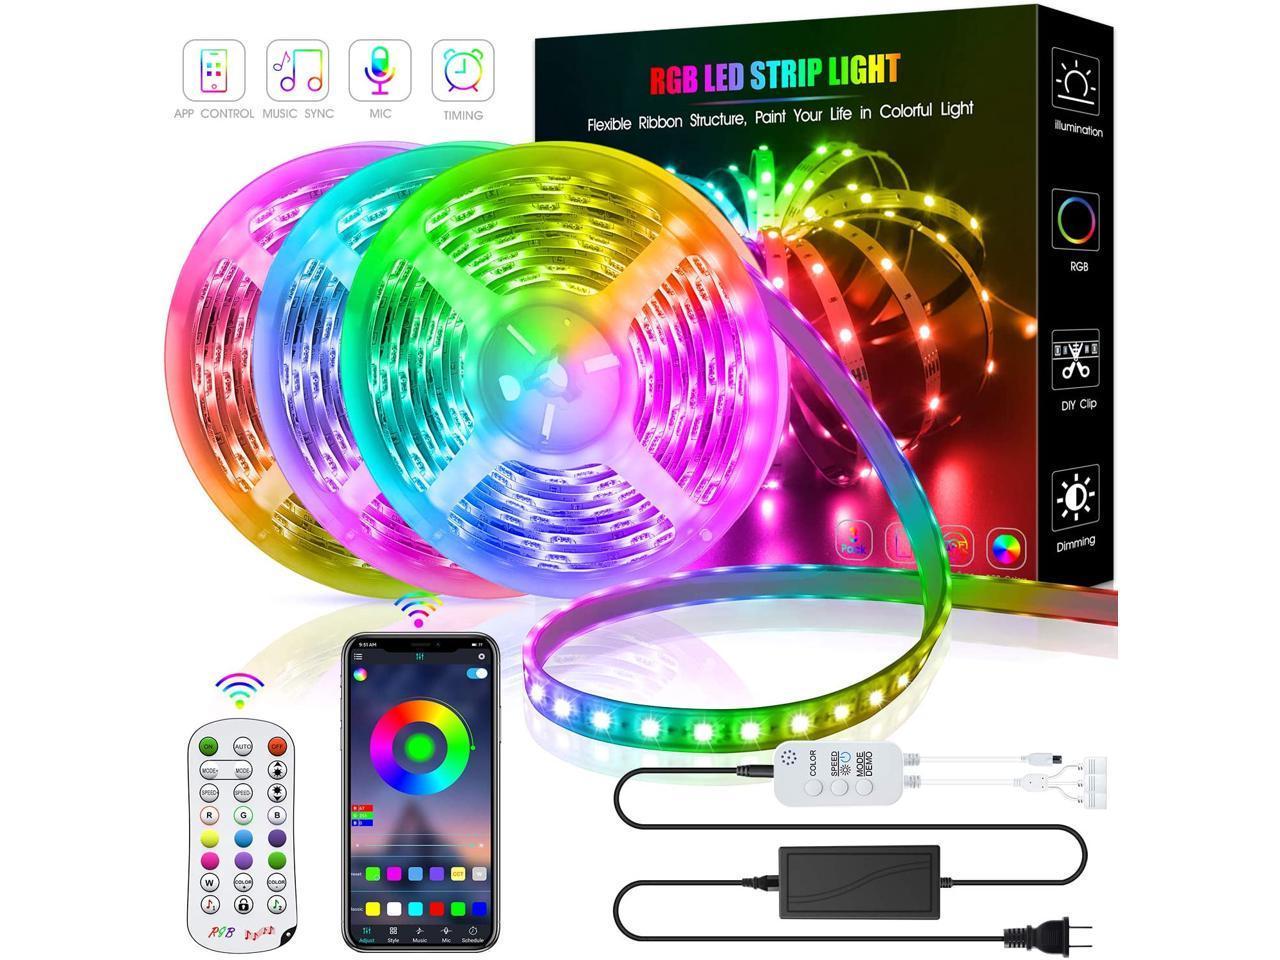 Details about   LED Strip Lights RGB 5050 Color Change Remote Room Decor TV Light 50ft Kit 1-20M 